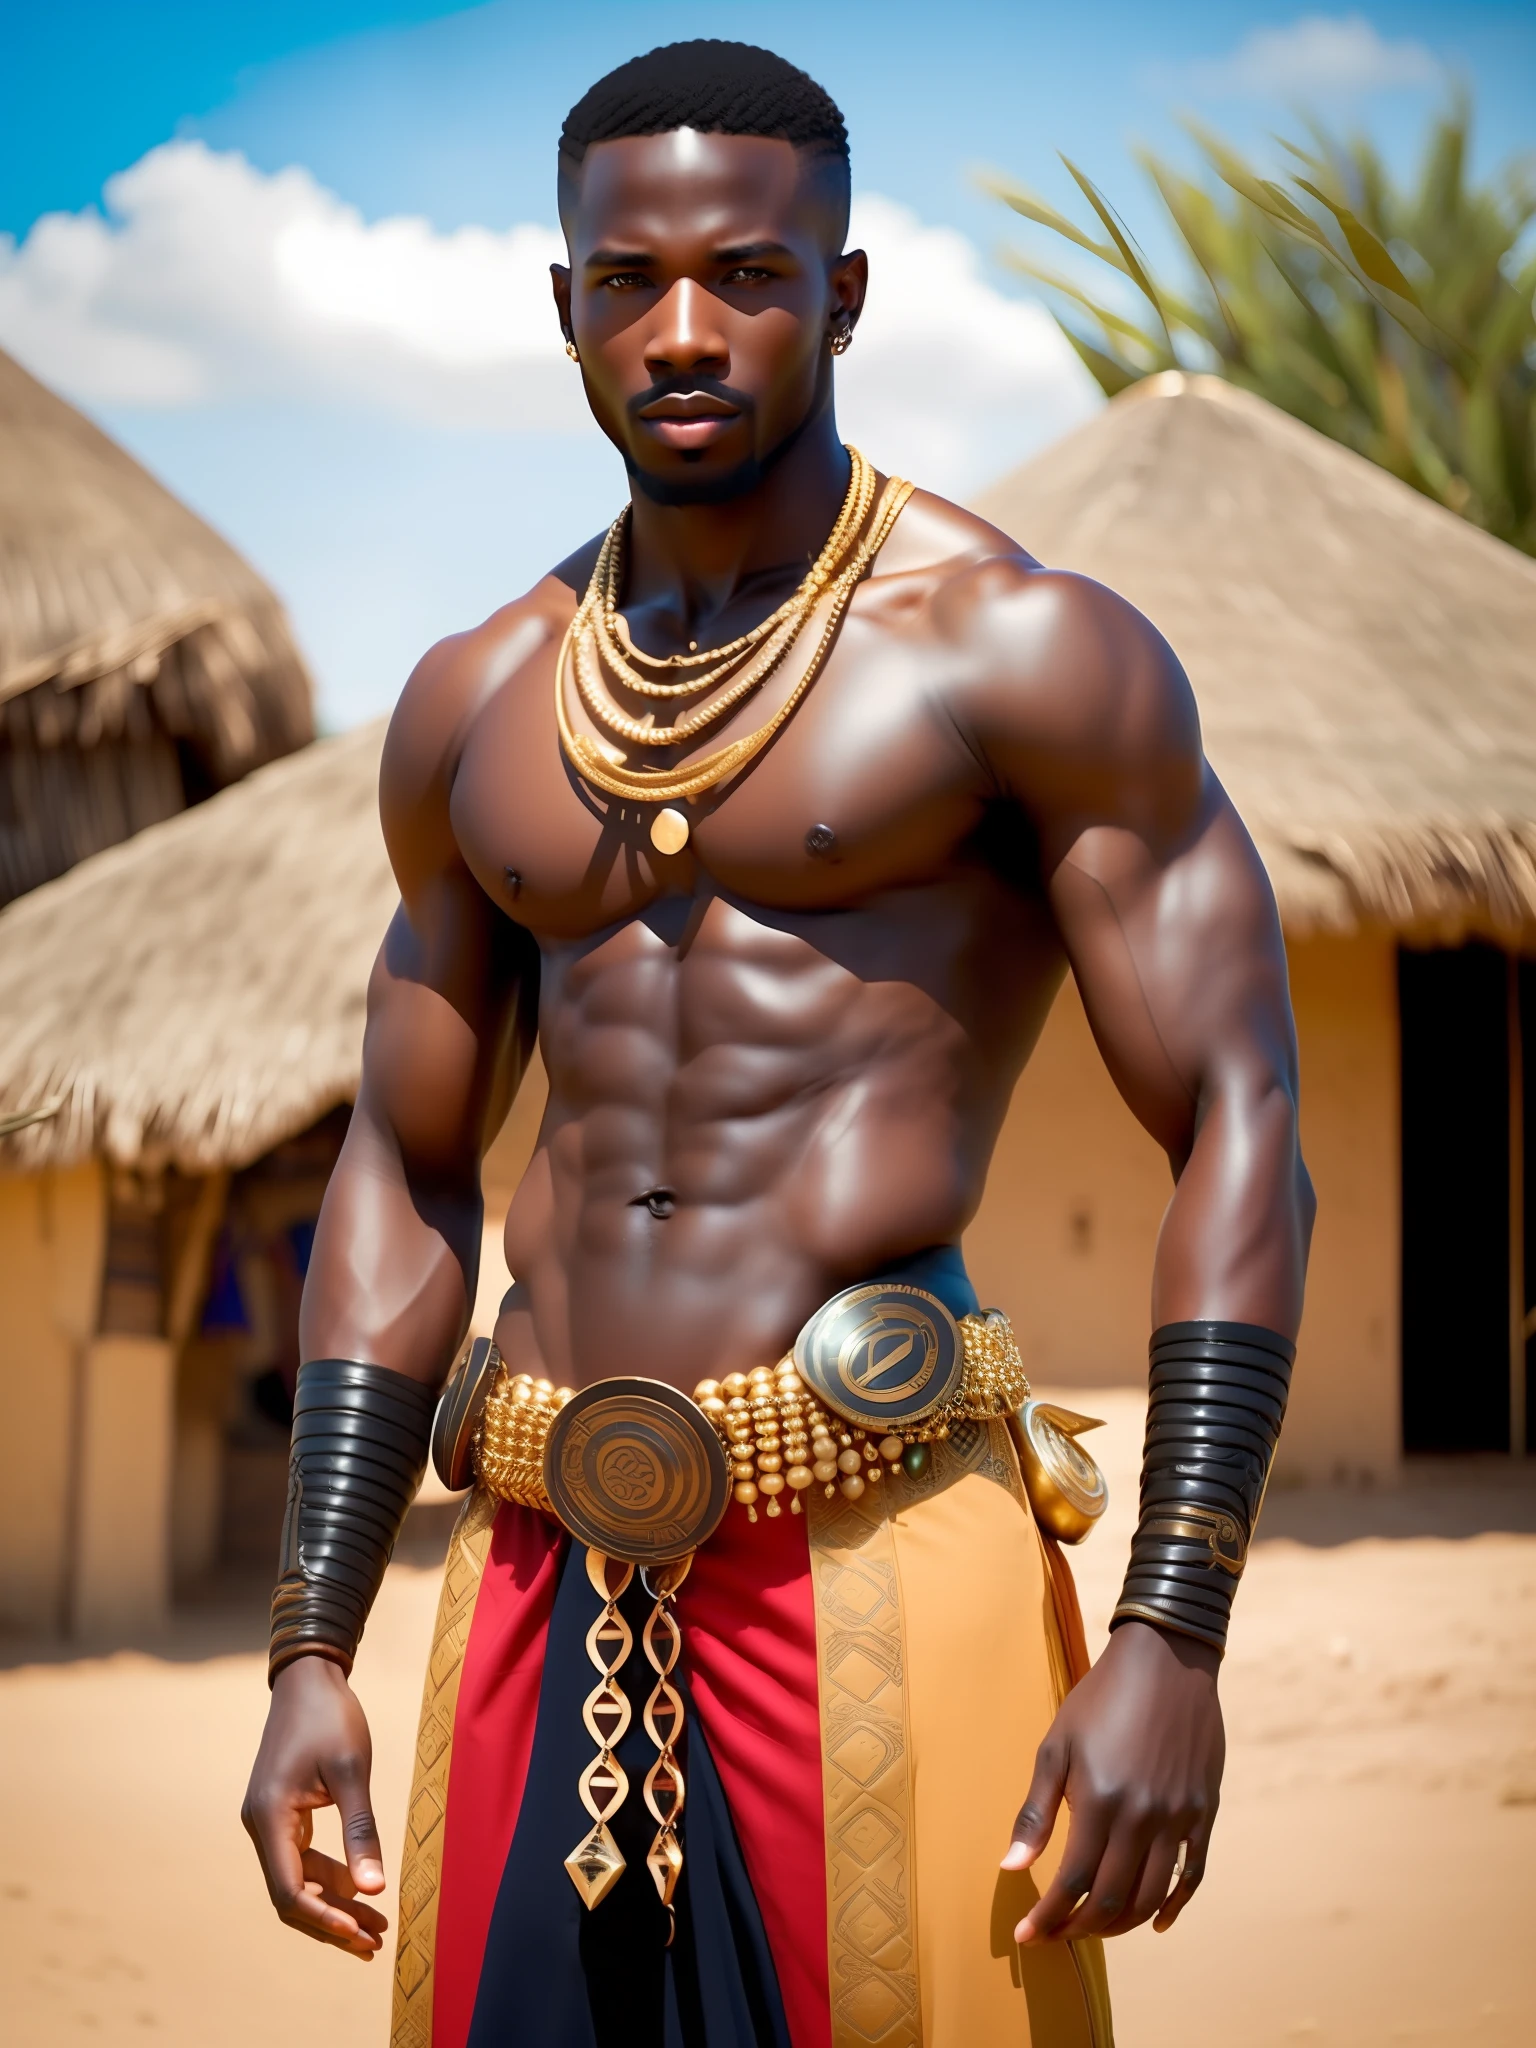 他媽的_科幻, 他媽的_科幻_v2, 一個年輕人的肖像, 肌肉發達、非常英俊、有吸引力的非洲戰士, 在一個非洲村莊前, 色彩丰富的衣服和金色的非洲珠宝, 特寫, 富麗堂皇的姿勢與態度. 他媽的_电影_v2.